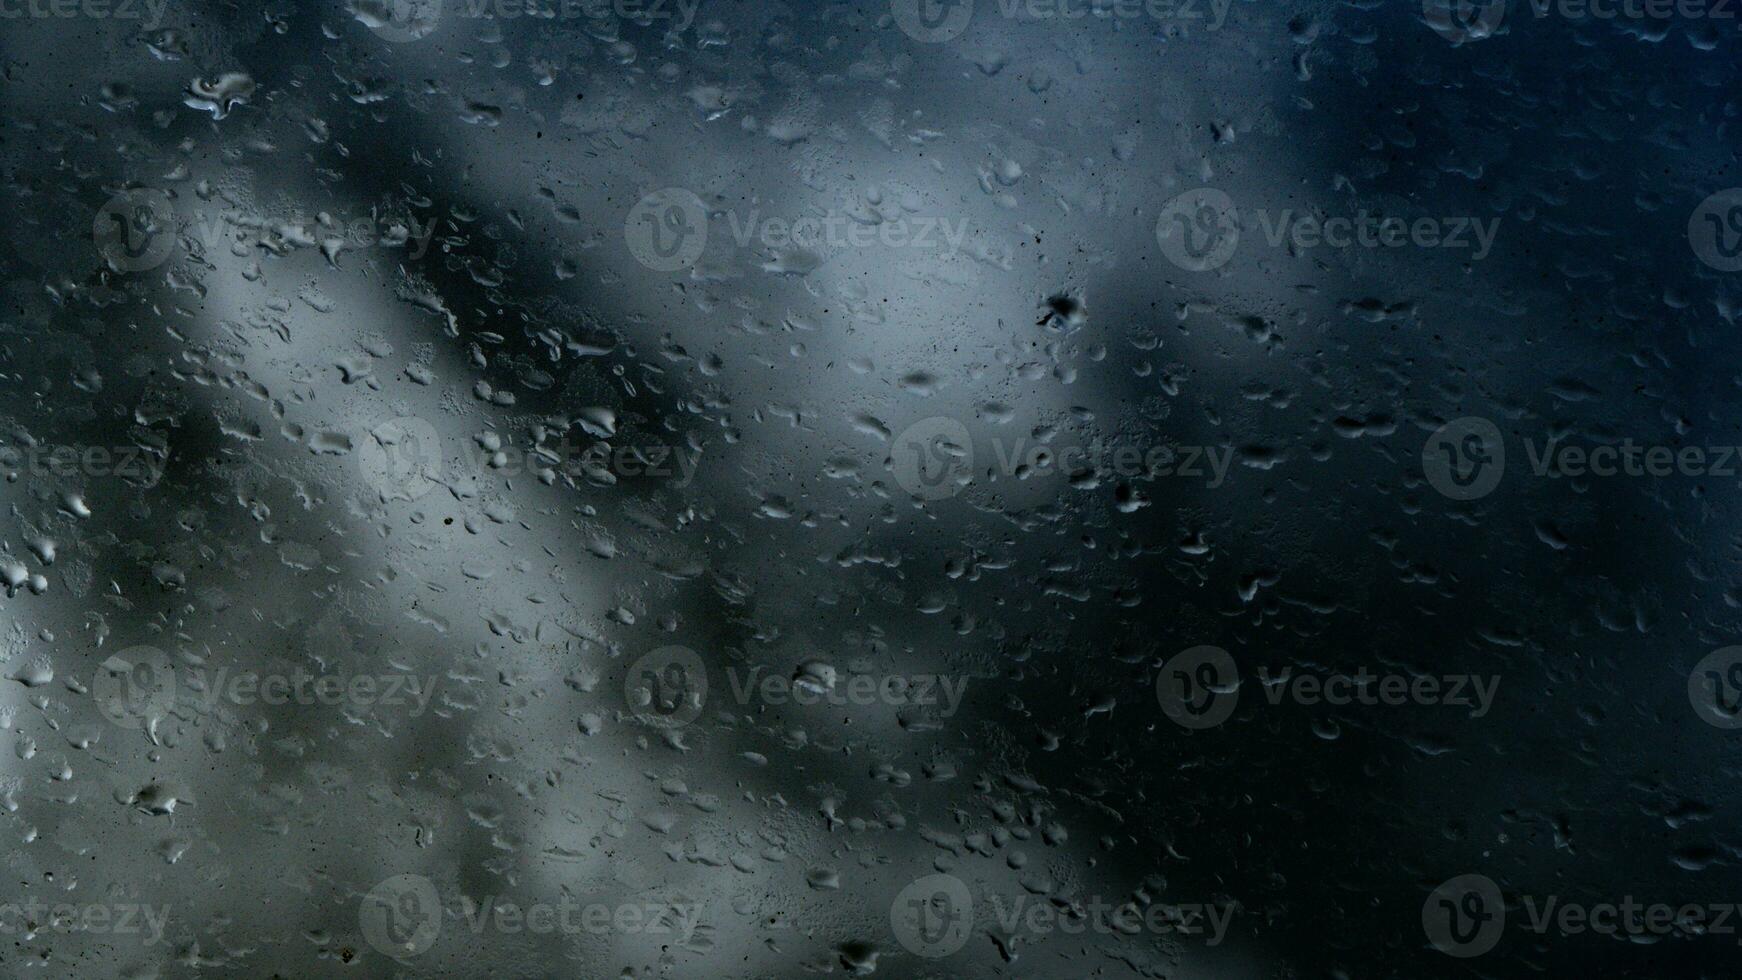 lluvia agua gotas en vaso foto